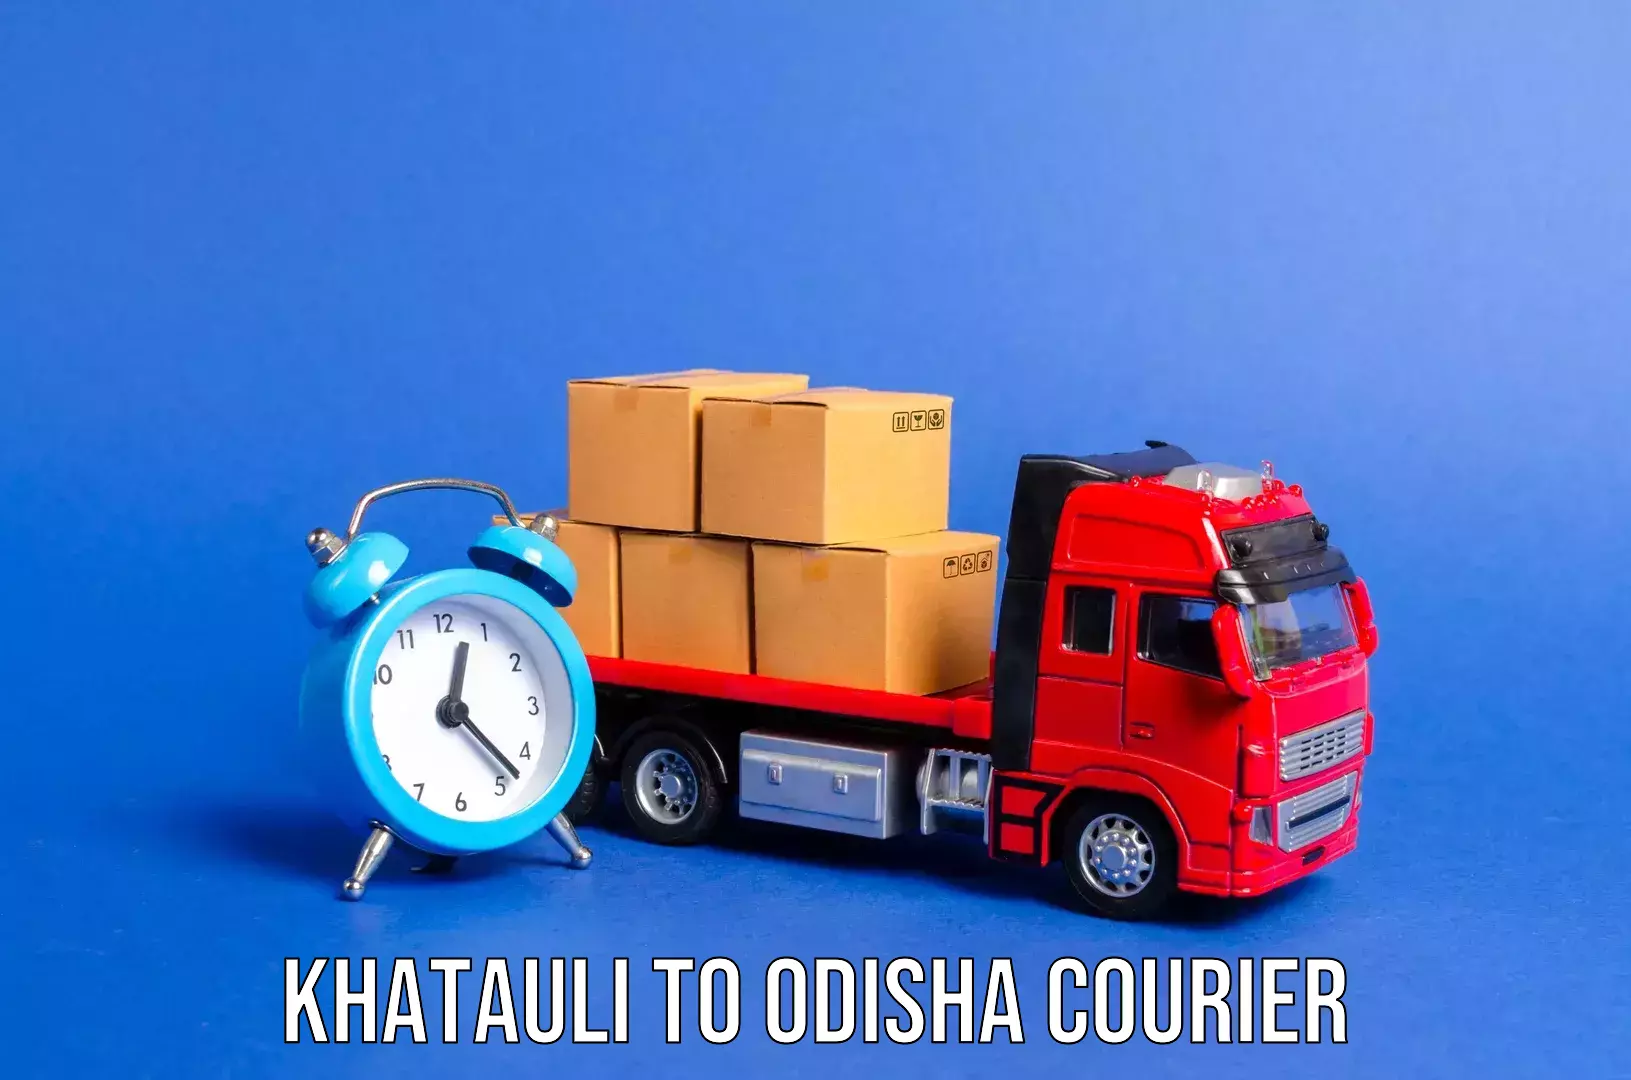 Luggage transport service Khatauli to Kosagumuda